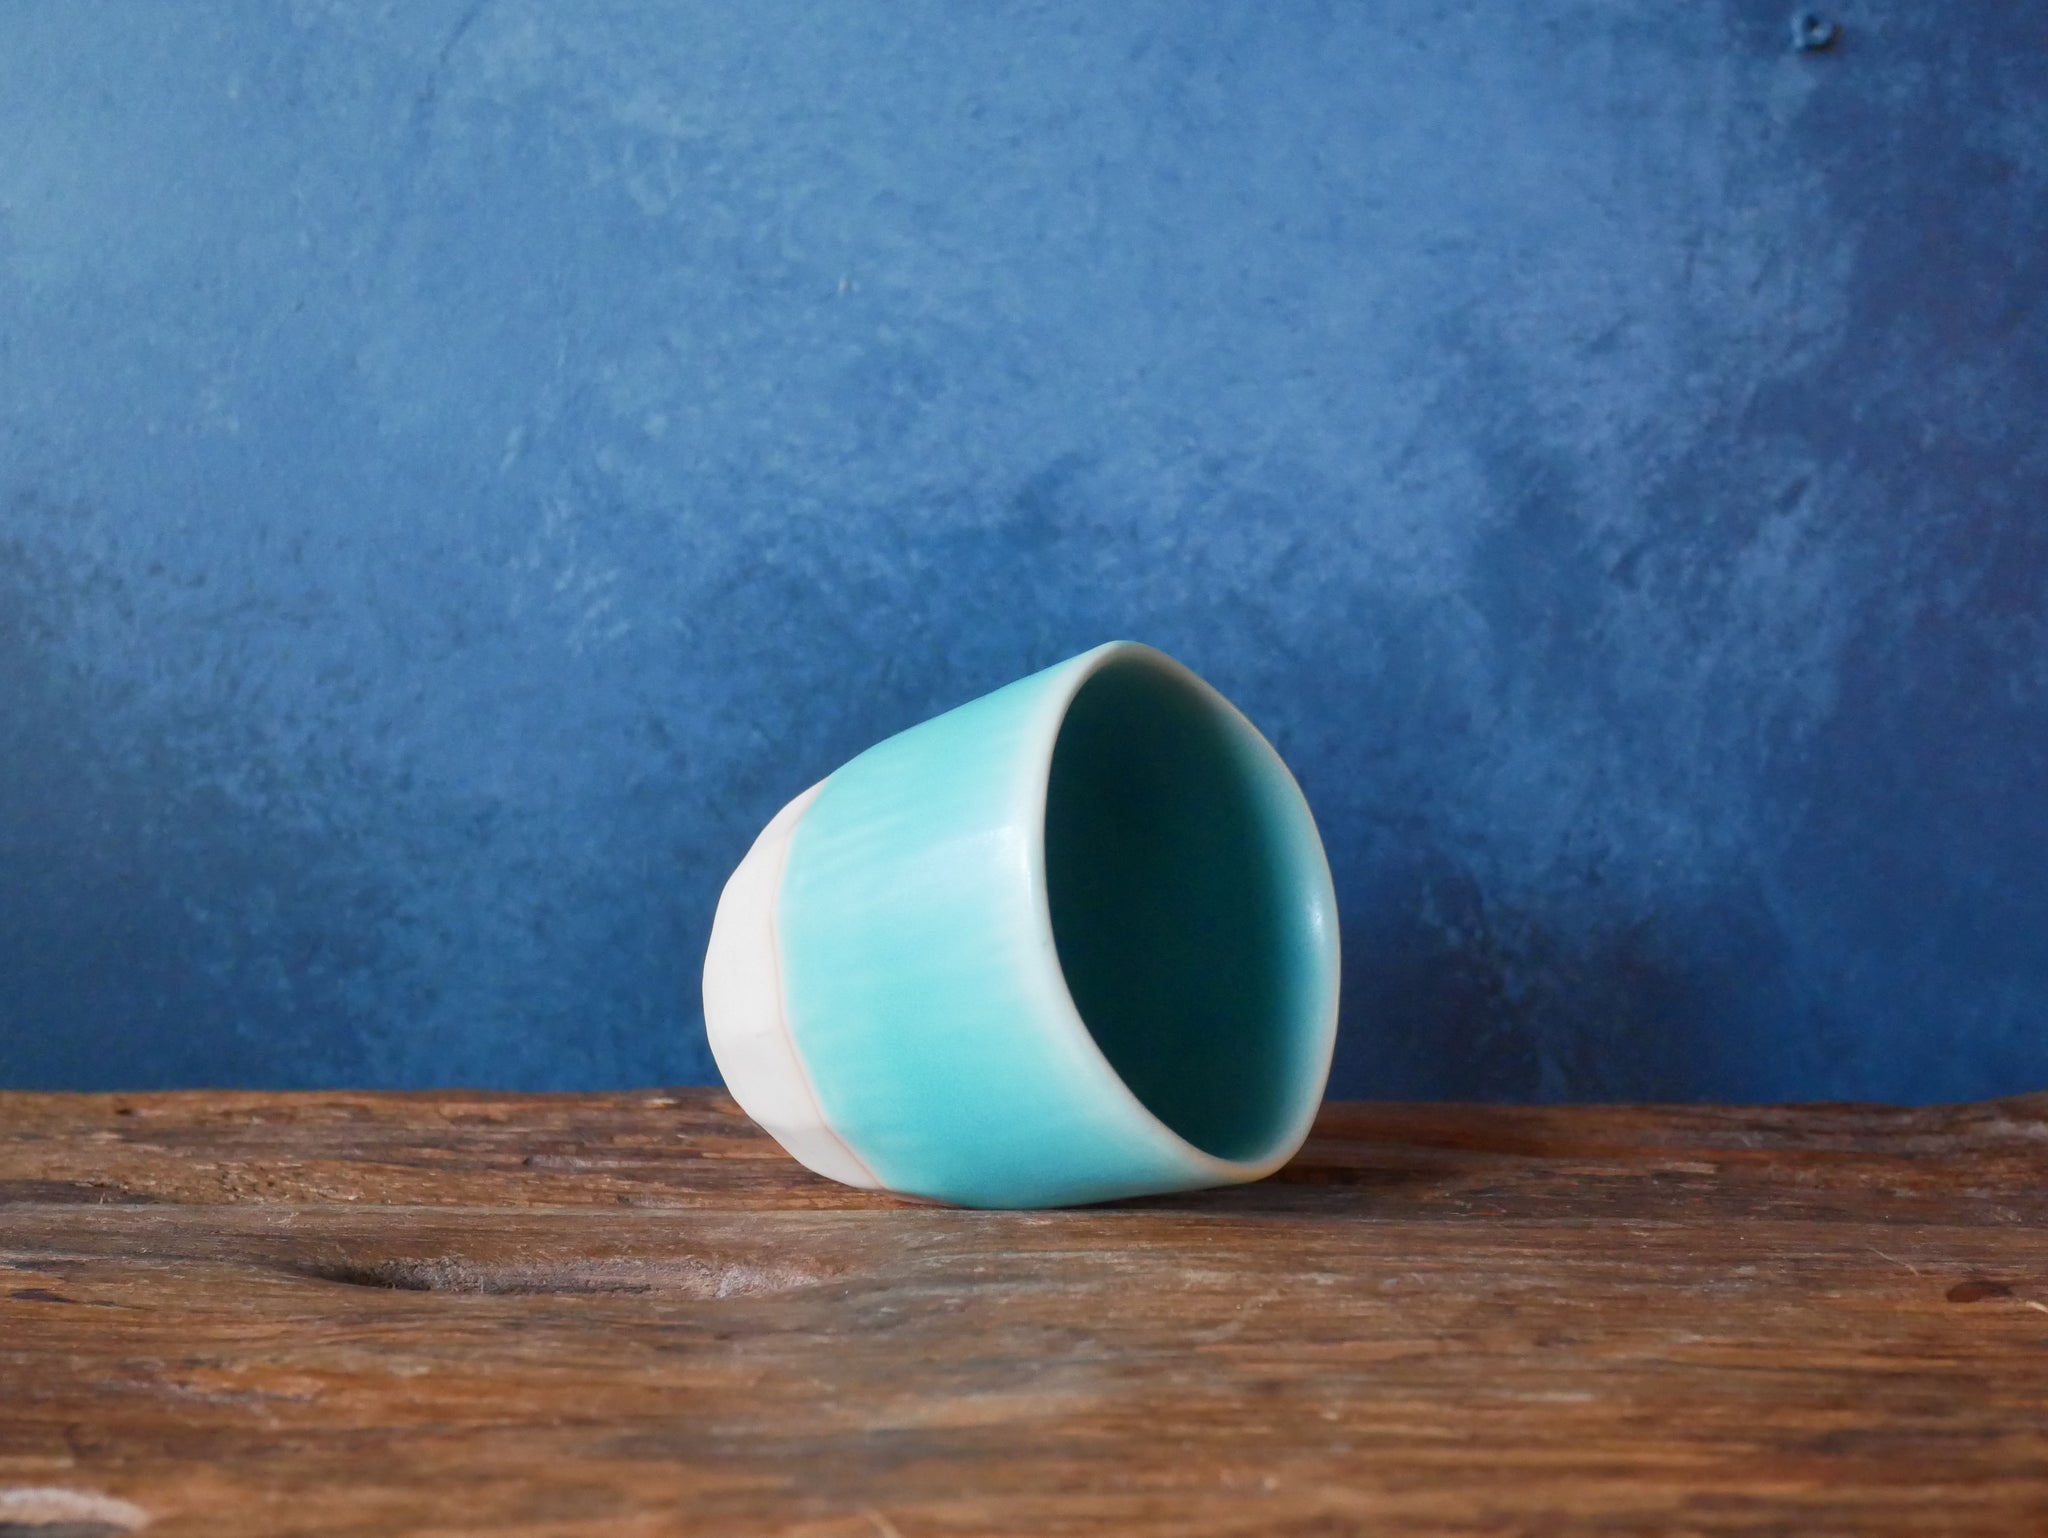 Turquoise Mug - I